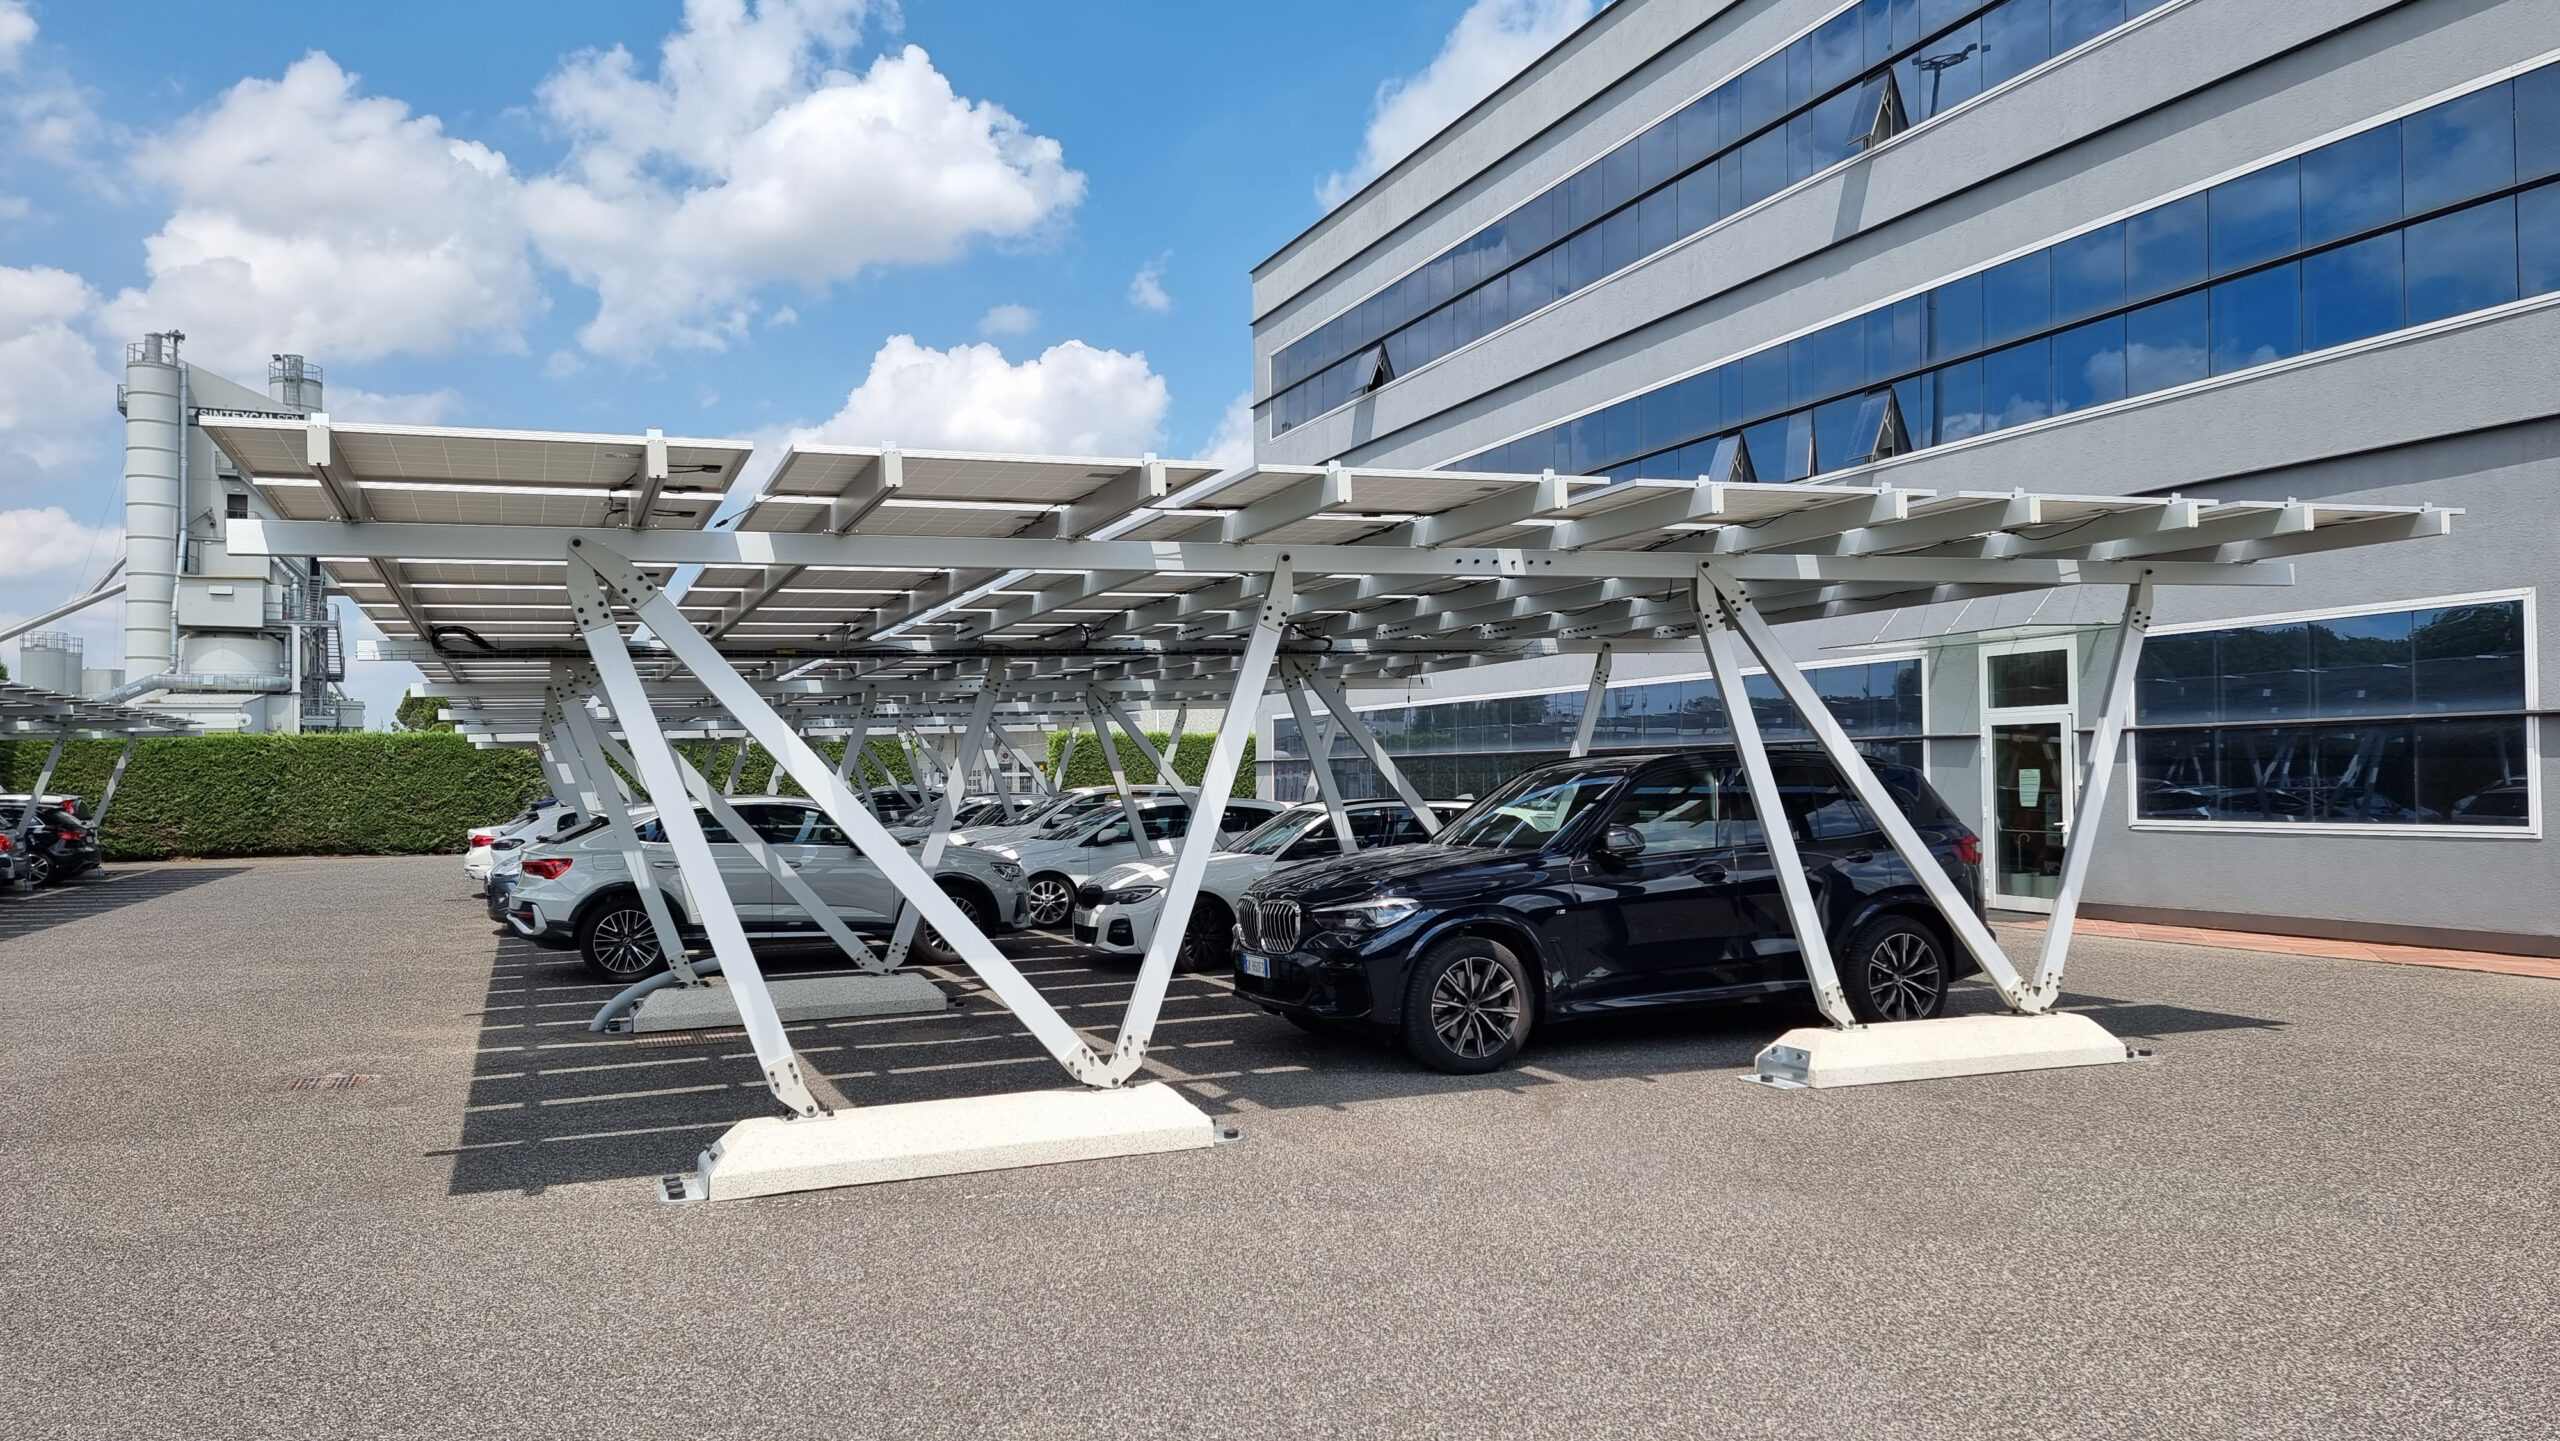 Cars underneath a solar powered canopy